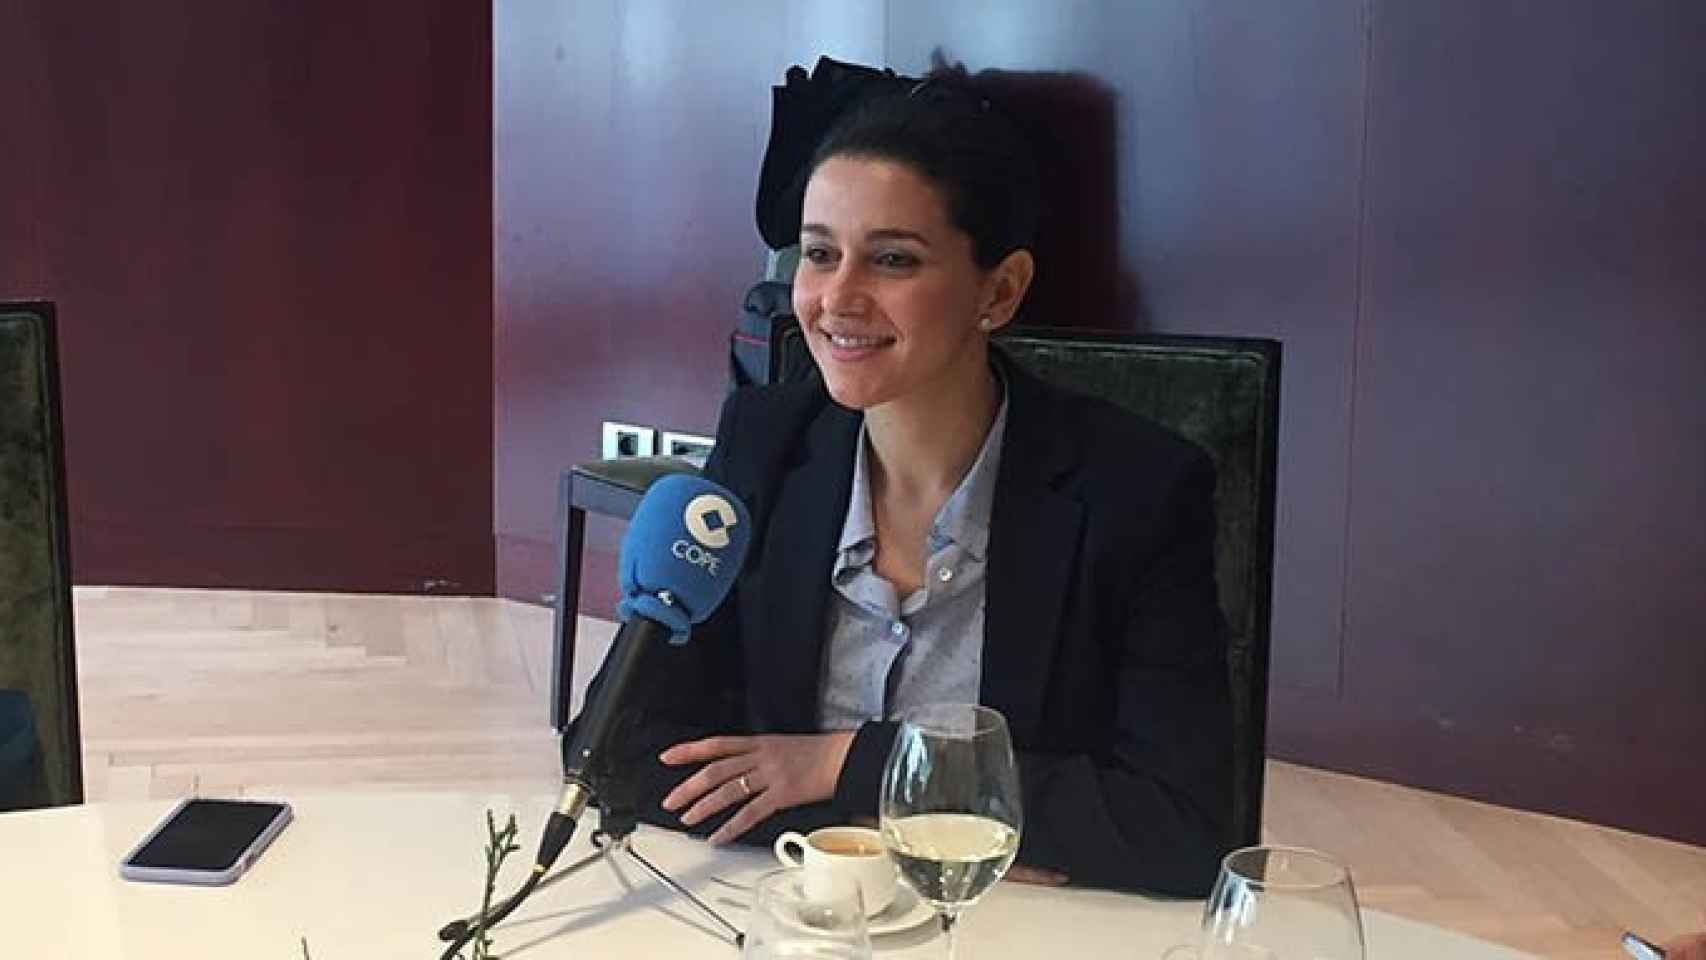 La presidenta del grupo parlamentario de Ciudadanos en Cataluña, Inés Arrimadas, durante una entrevista en la emisora COPE / CG